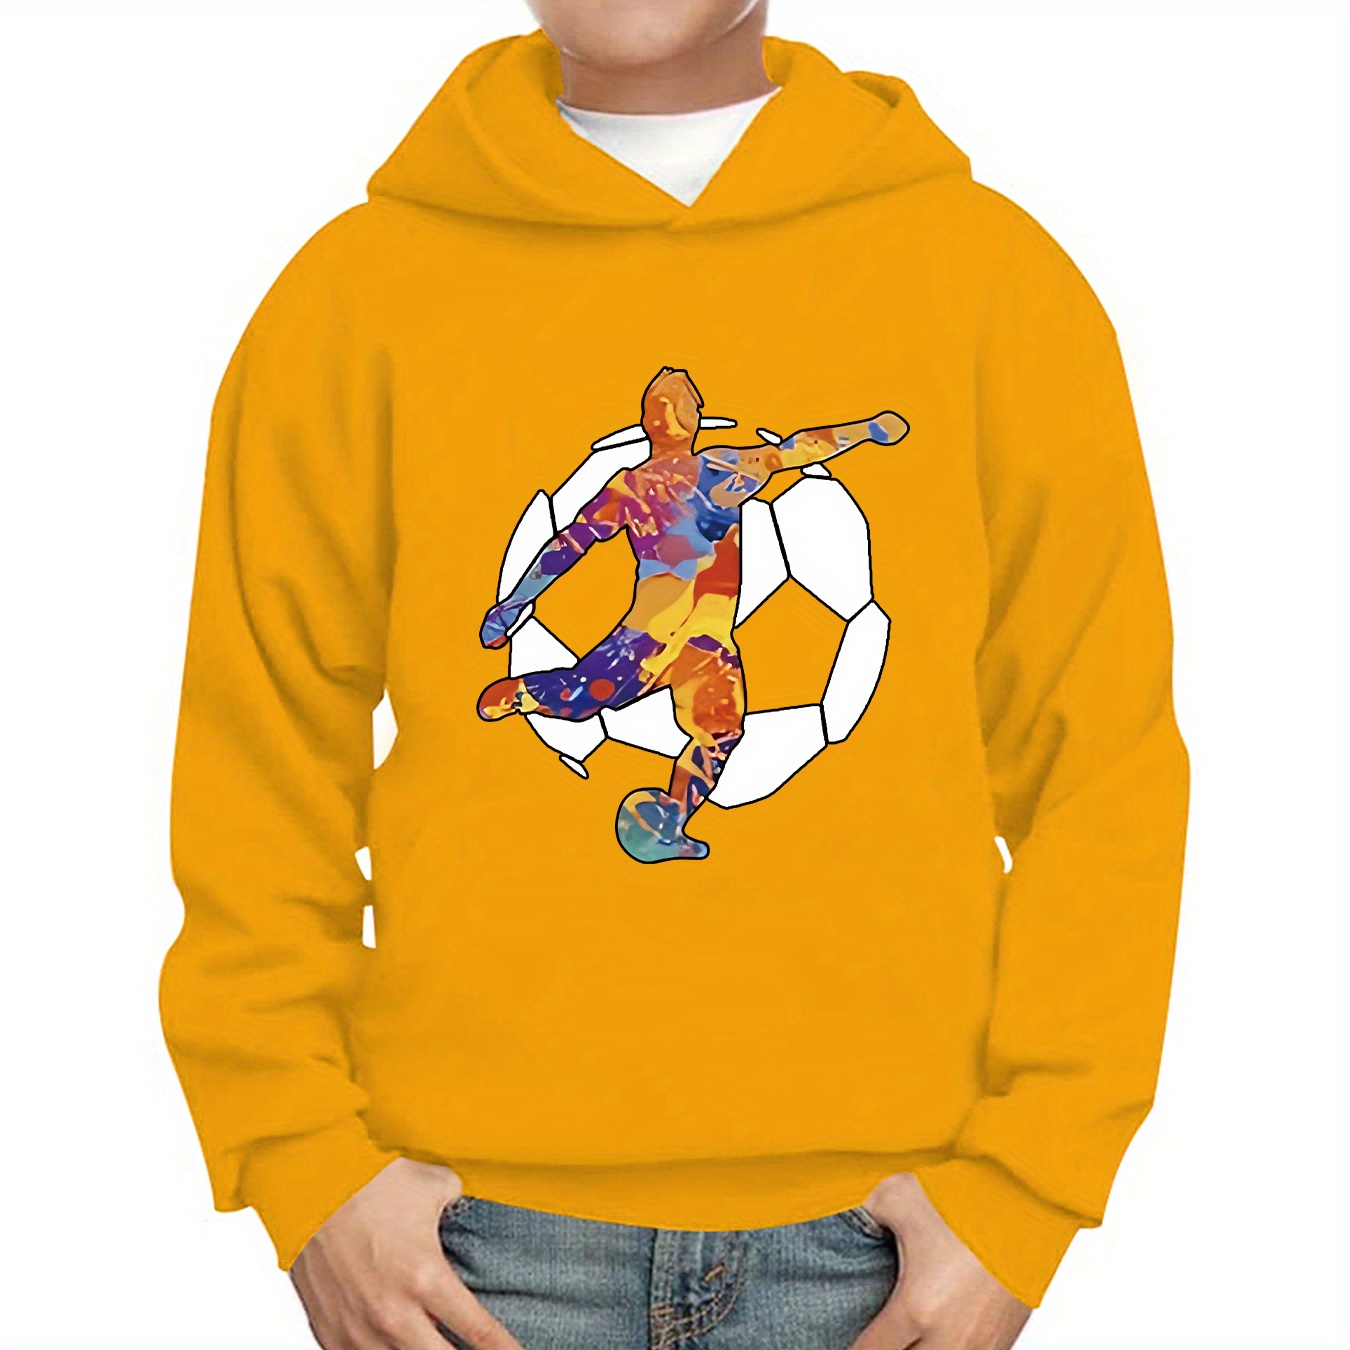 

Sweat à capuche imprimé avec un joueur de football pour garçons - Design graphique décontracté avec tissu extensible pour un confortable vêtement d'automne/hiver